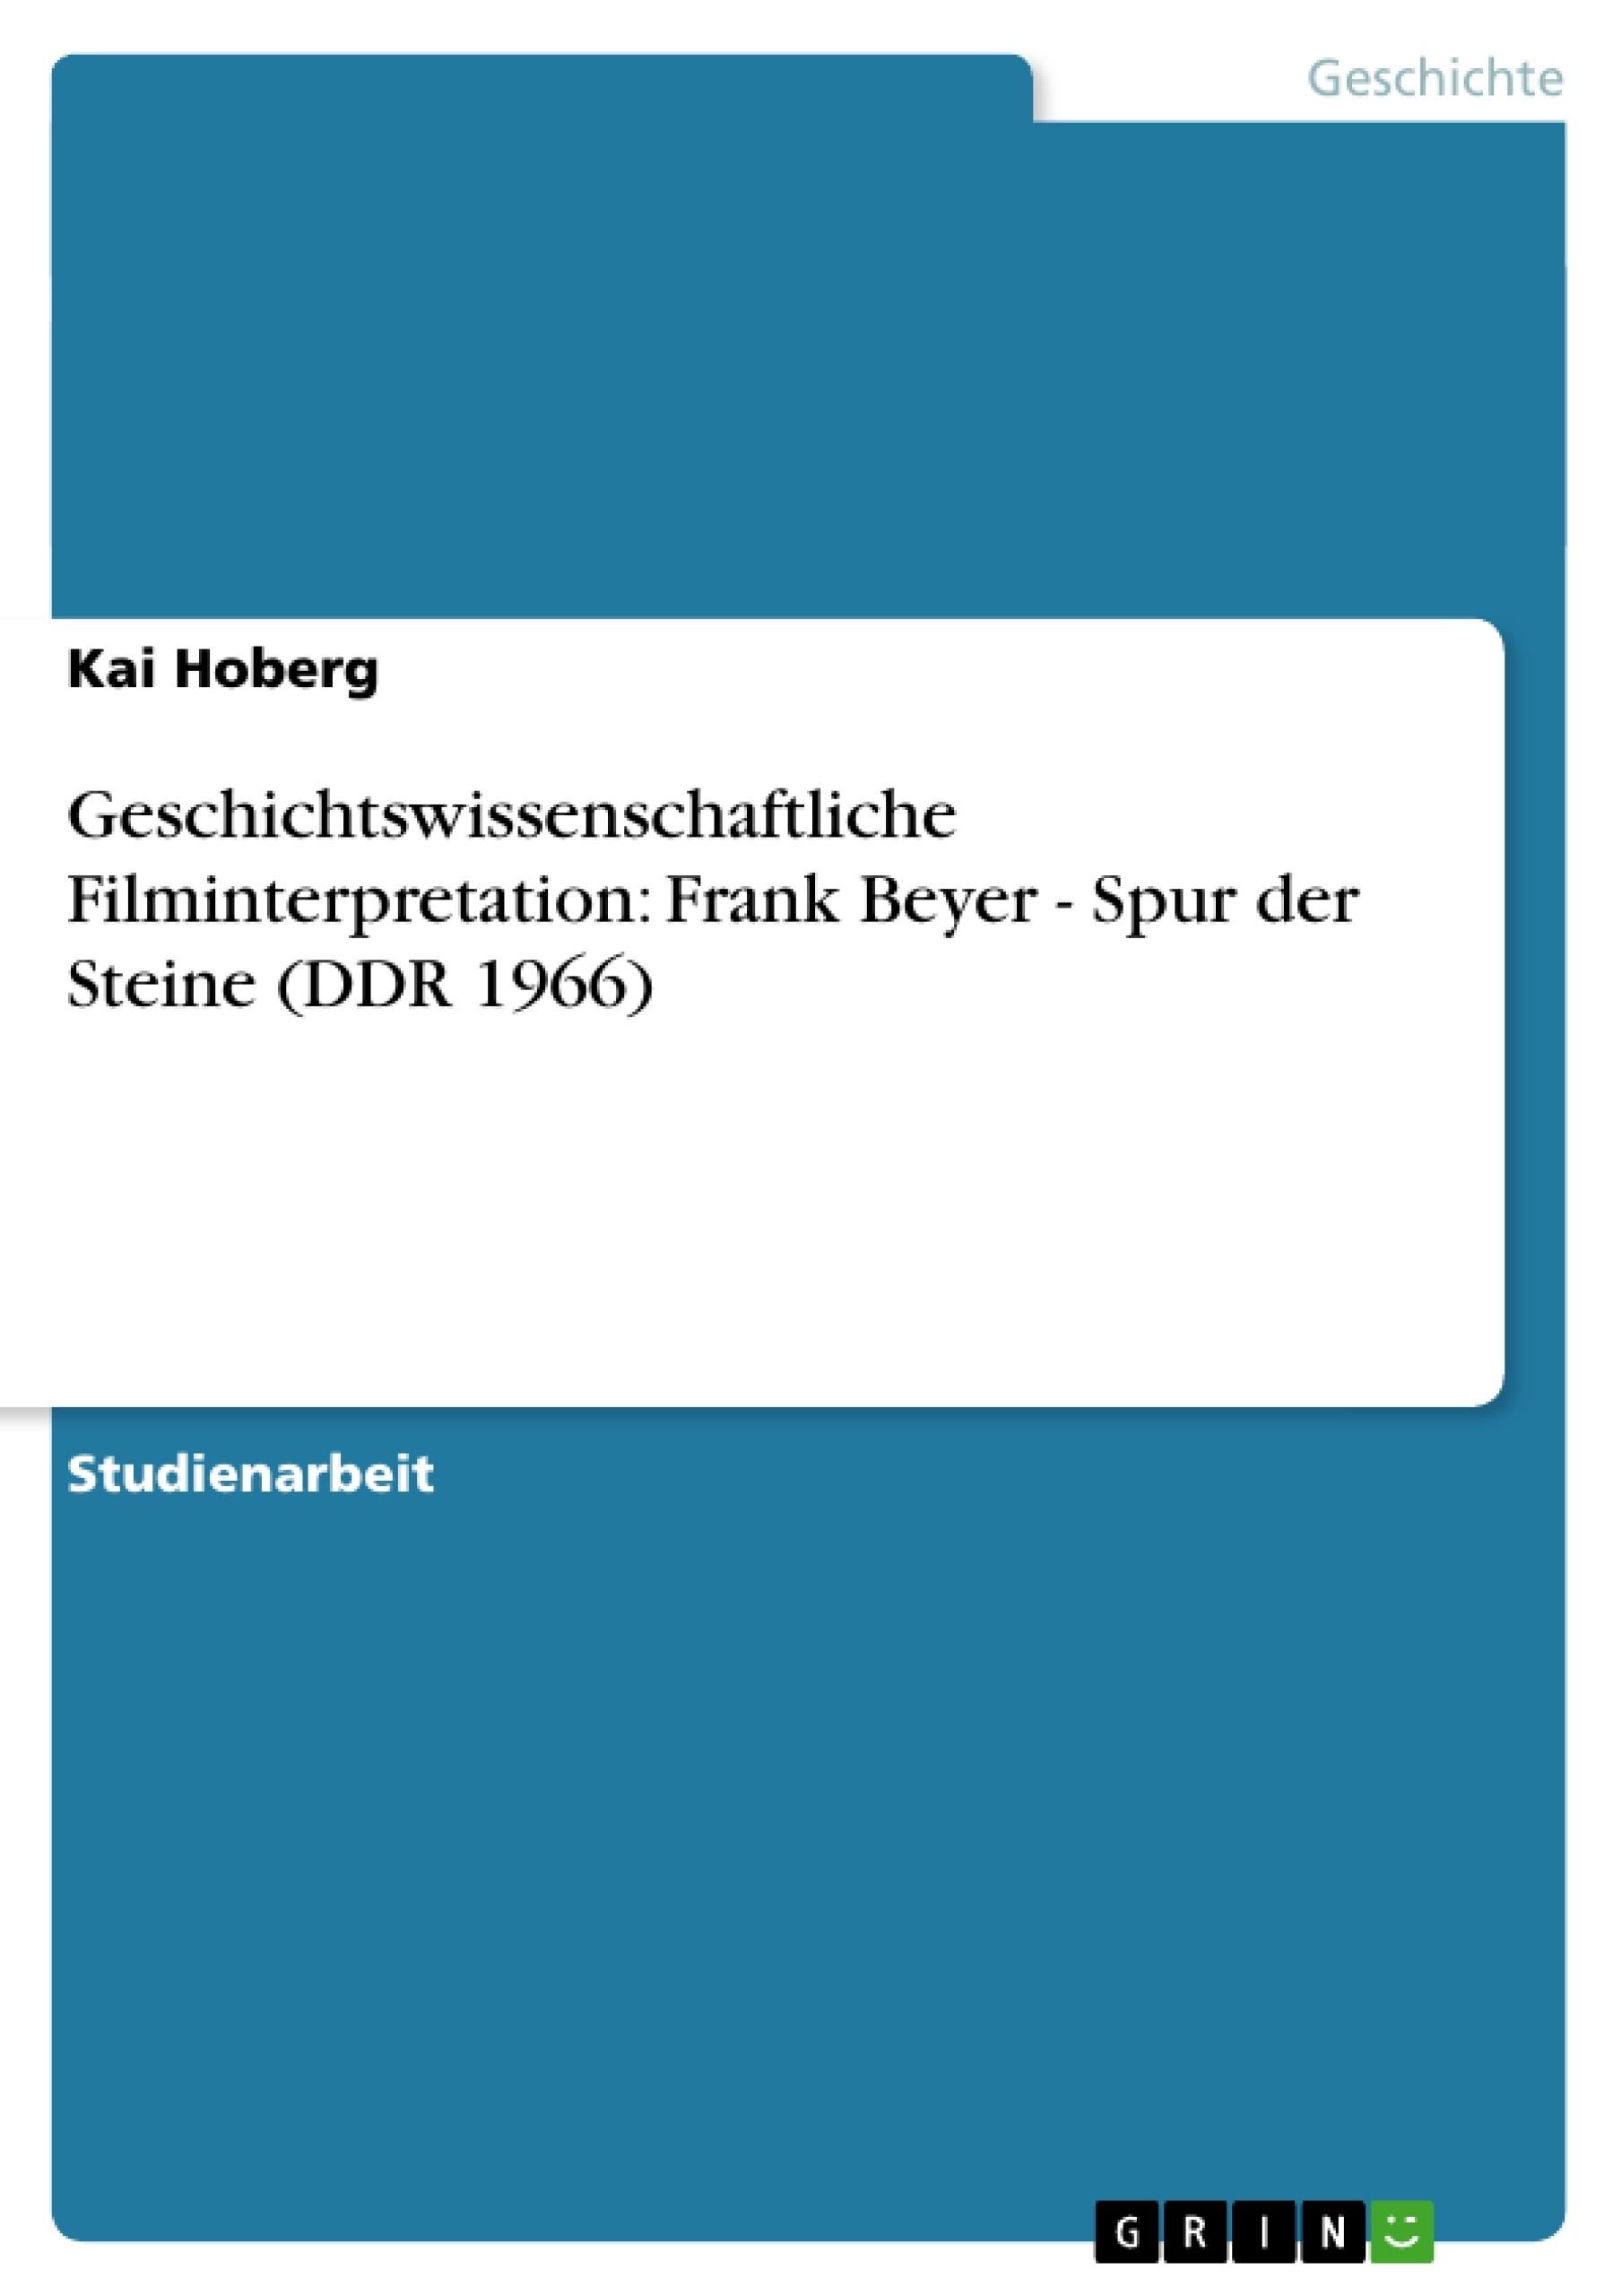 Título: Geschichtswissenschaftliche Filminterpretation: Frank Beyer - Spur der Steine (DDR 1966)